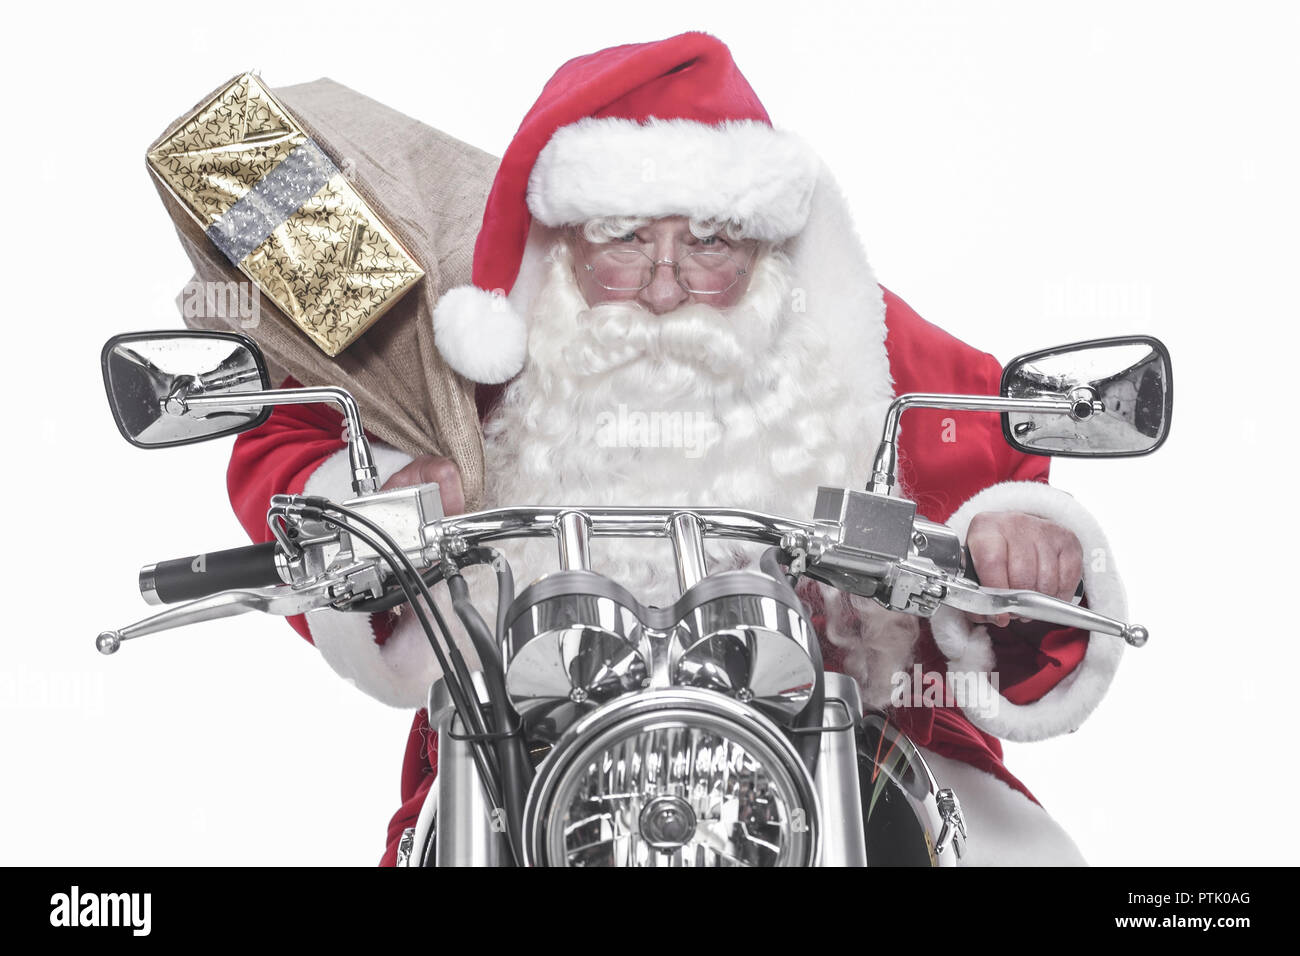 Mann Nikolaus Kostuem Nikolauskostuem Weihnachten Motorrad Fahren Weihnachtszeit Santa Claus X Mas Geschenk Schenken Liefern Modellfreiga Stock Photo Alamy